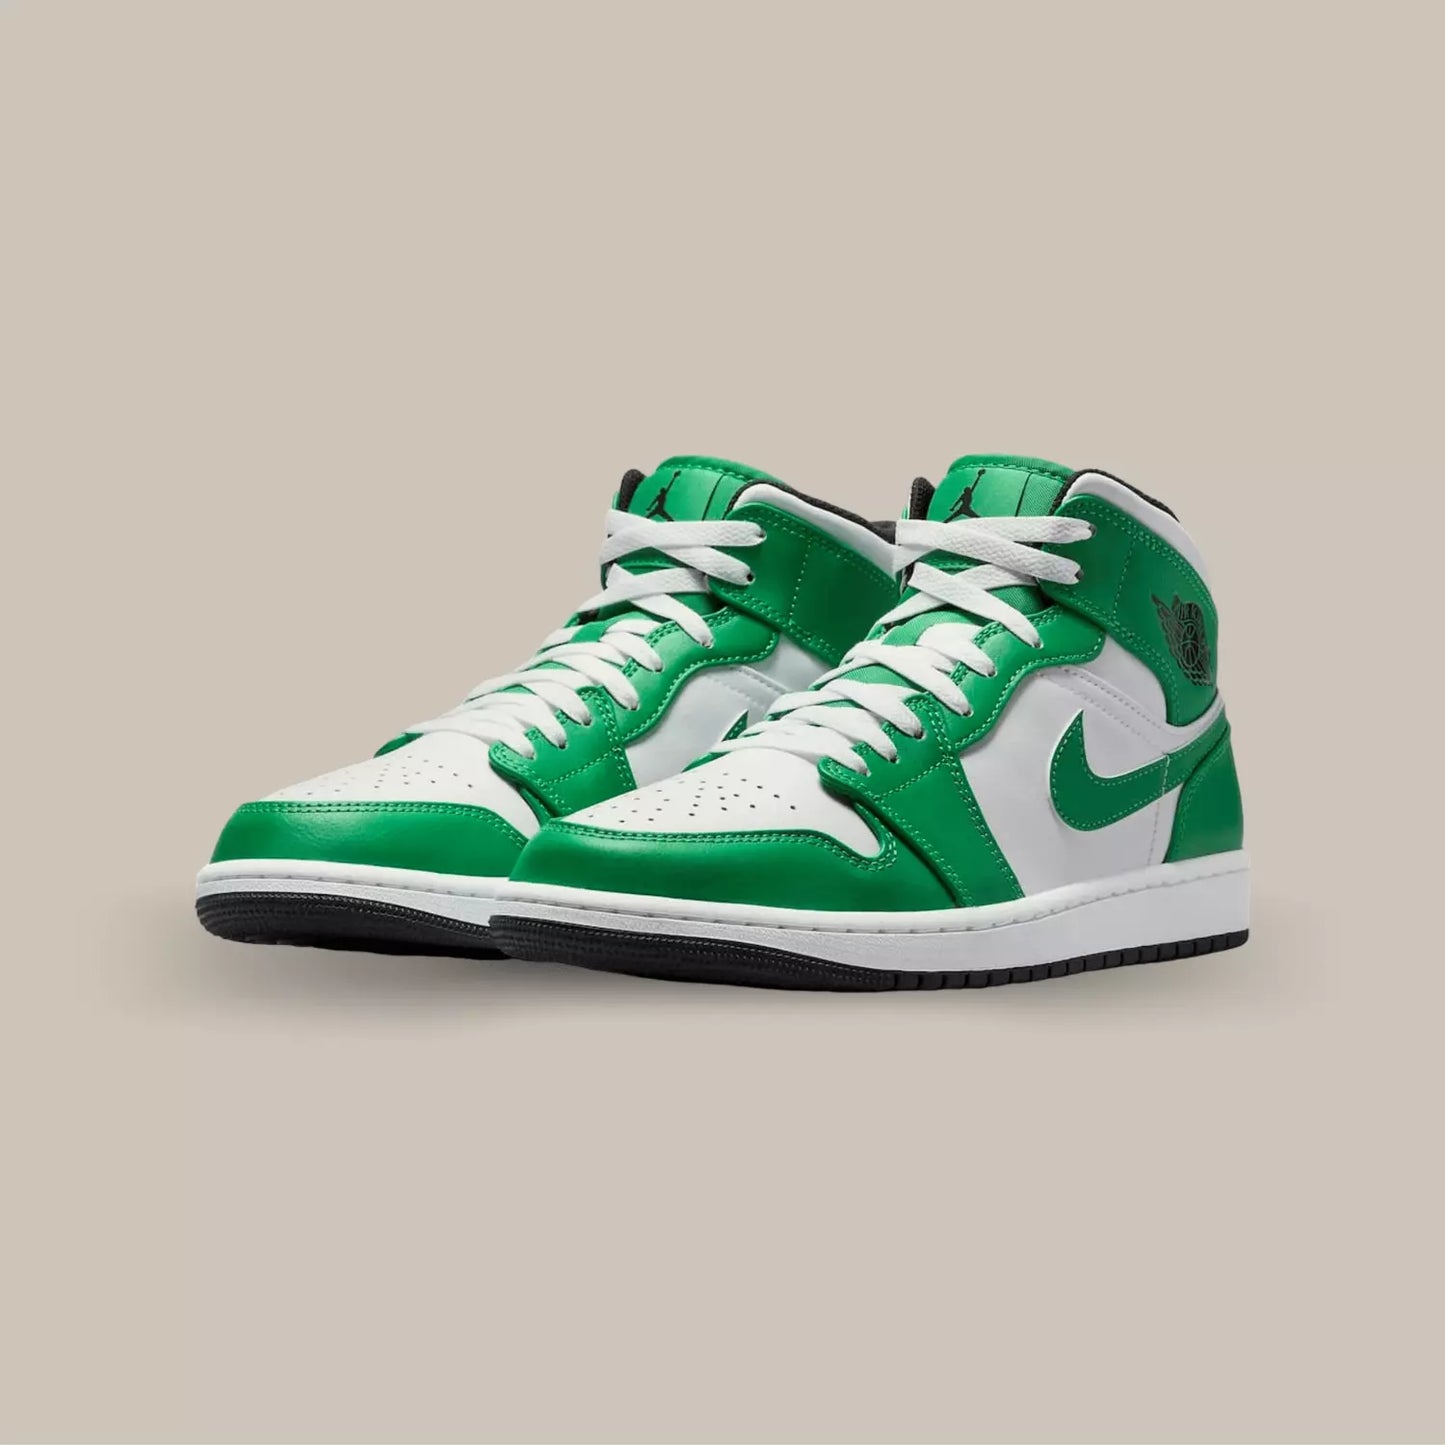 La Air Jordan 1 Mid Lucky Green revient avec une base en cuir blance et de superpositions en cuir vert. Une paire parfaite pour tout les fans des Boston Celtics.